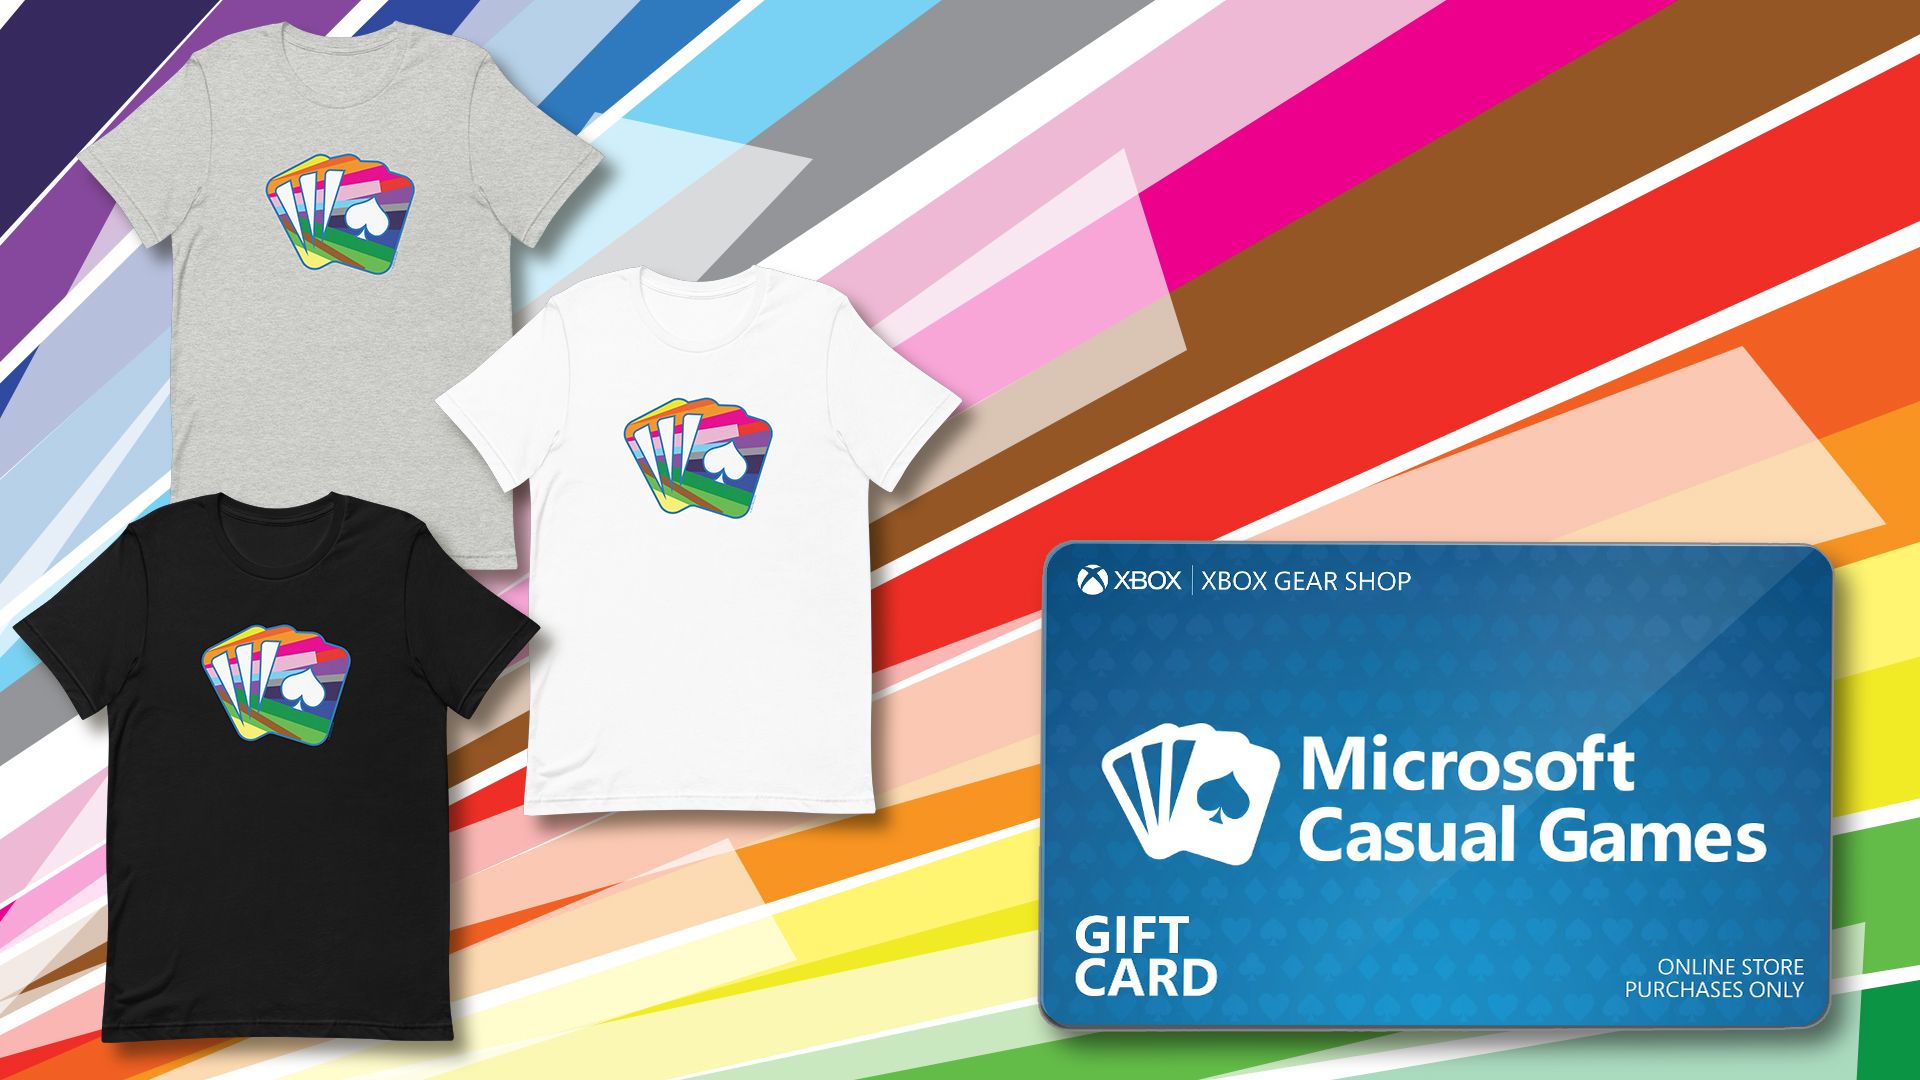 배경은 각진 색상의 광선으로 채워집니다. 새로운 Microsoft Causal Games 프라이드 로고가 있는 검정, 회색 및 흰색 3개의 티셔츠가 왼쪽에 표시됩니다. Xbox Gear Shop 기프트 카드는 오른쪽에 있습니다.